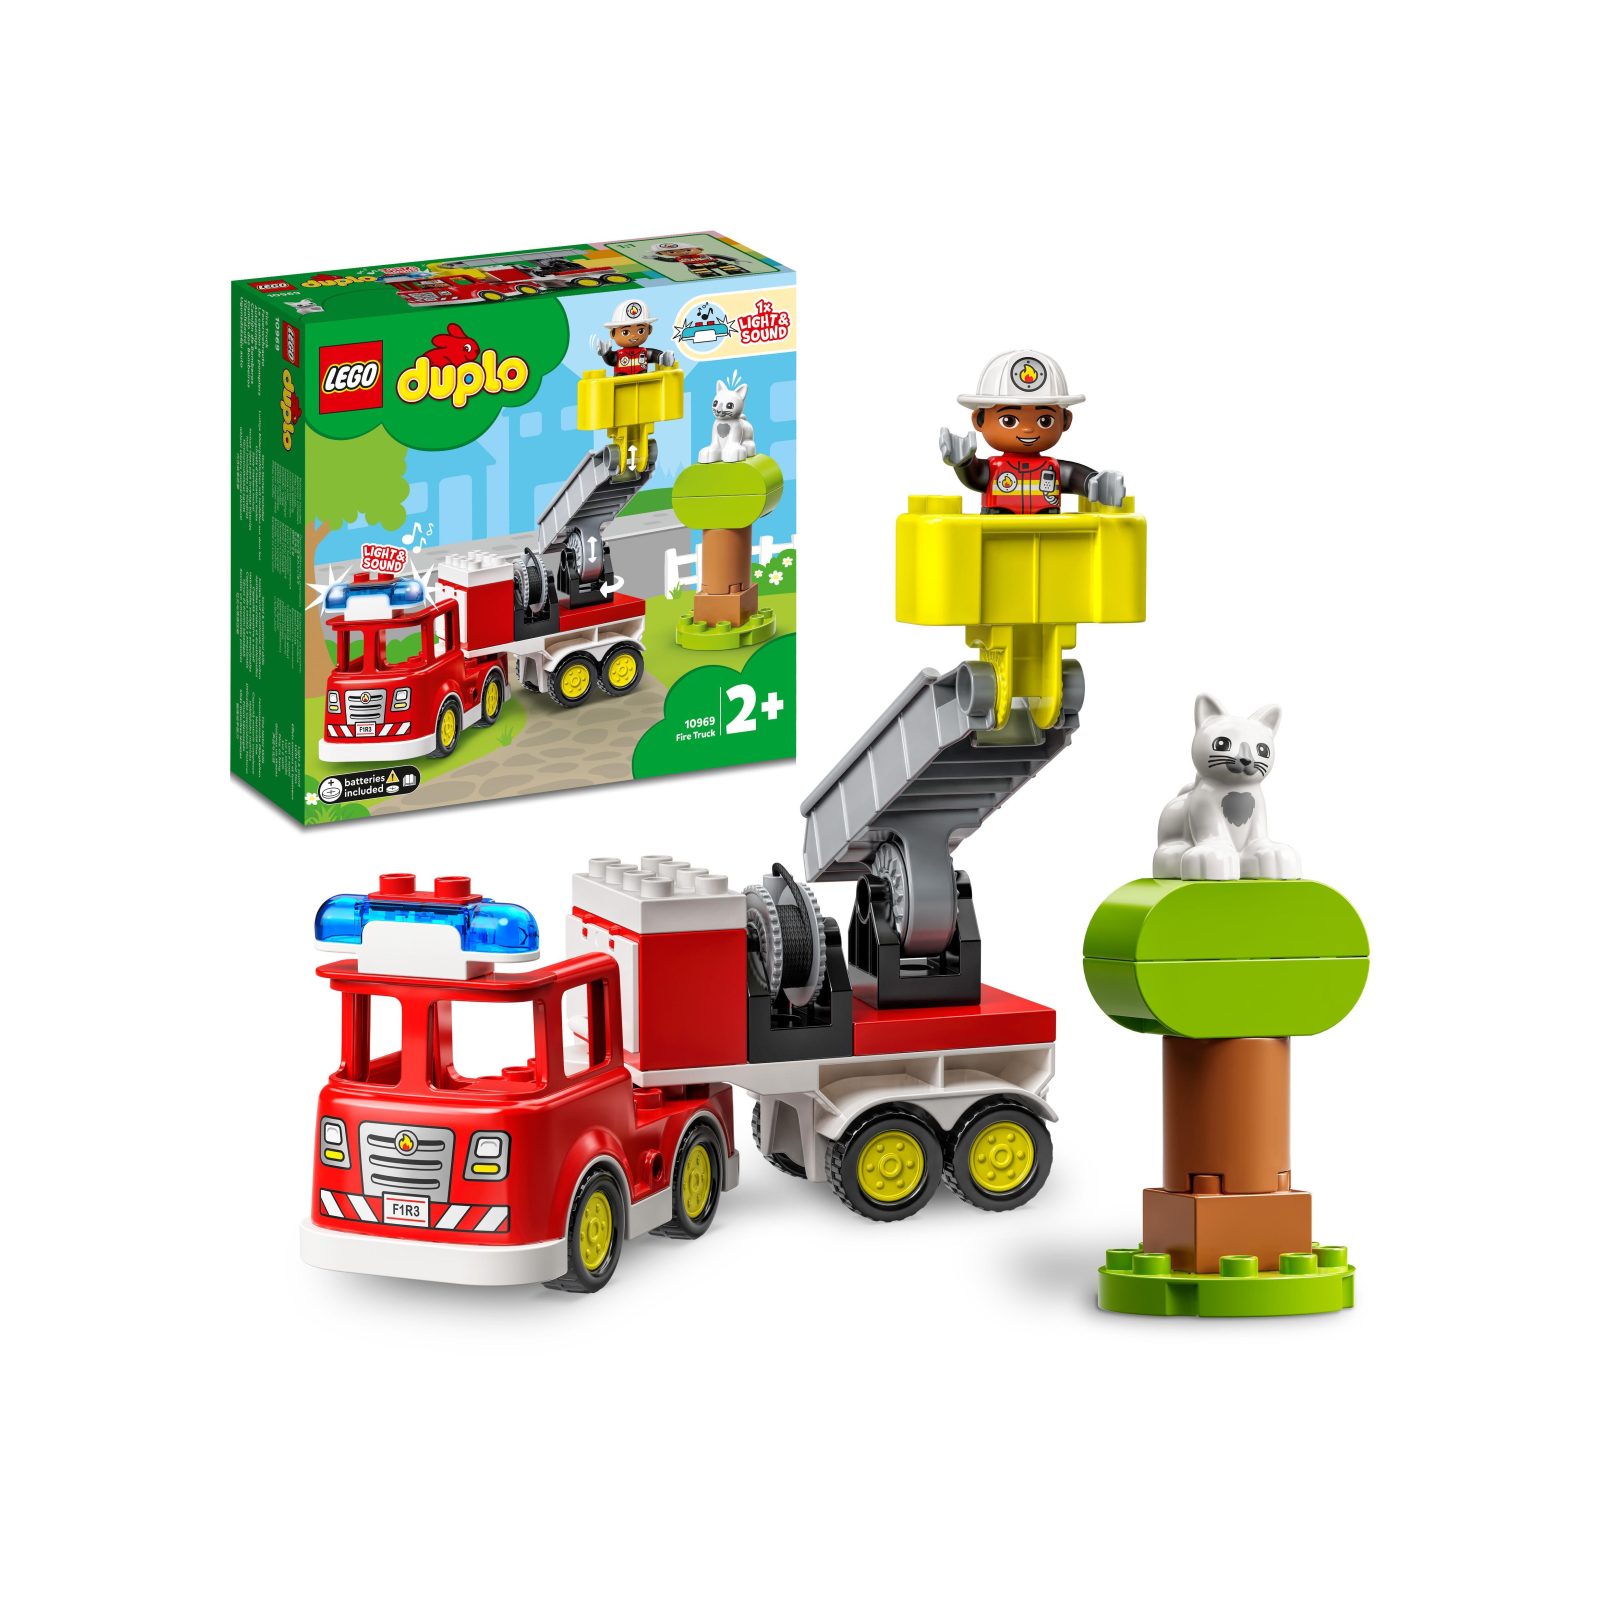 LEGO DUPLO Town Autopompa, Camion Giocattolo con Luci e Sirena, Figure  Pompiere e Gatto, Giochi Educativi per Bambini, 10969 - Toys Center